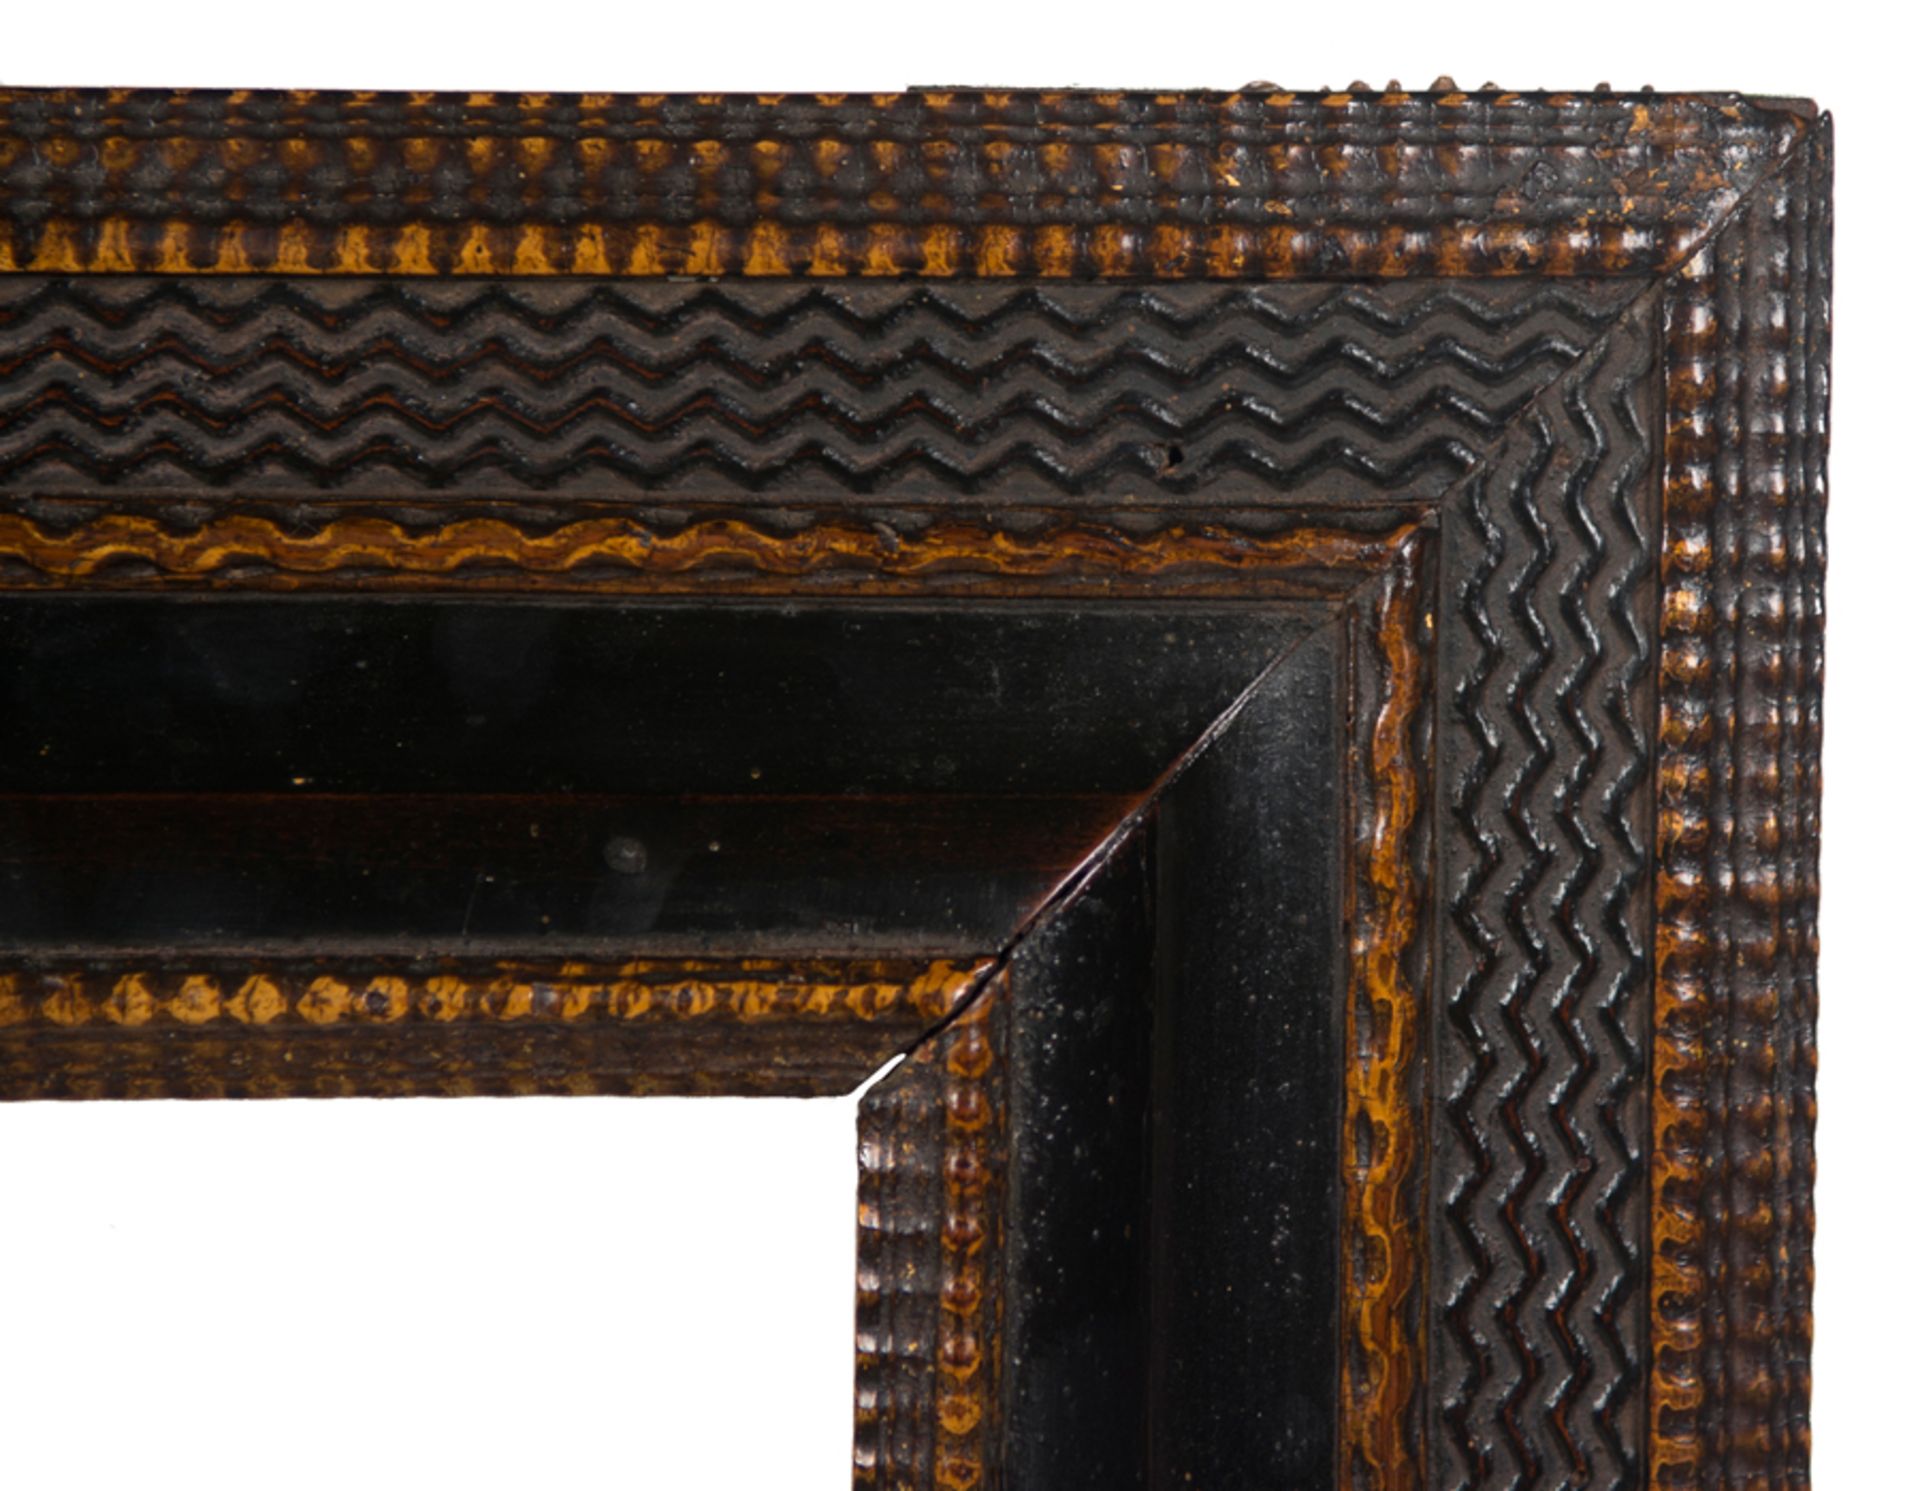 Carved wooden frame. Netherlandish work. 17th - 18th century. - Bild 2 aus 3